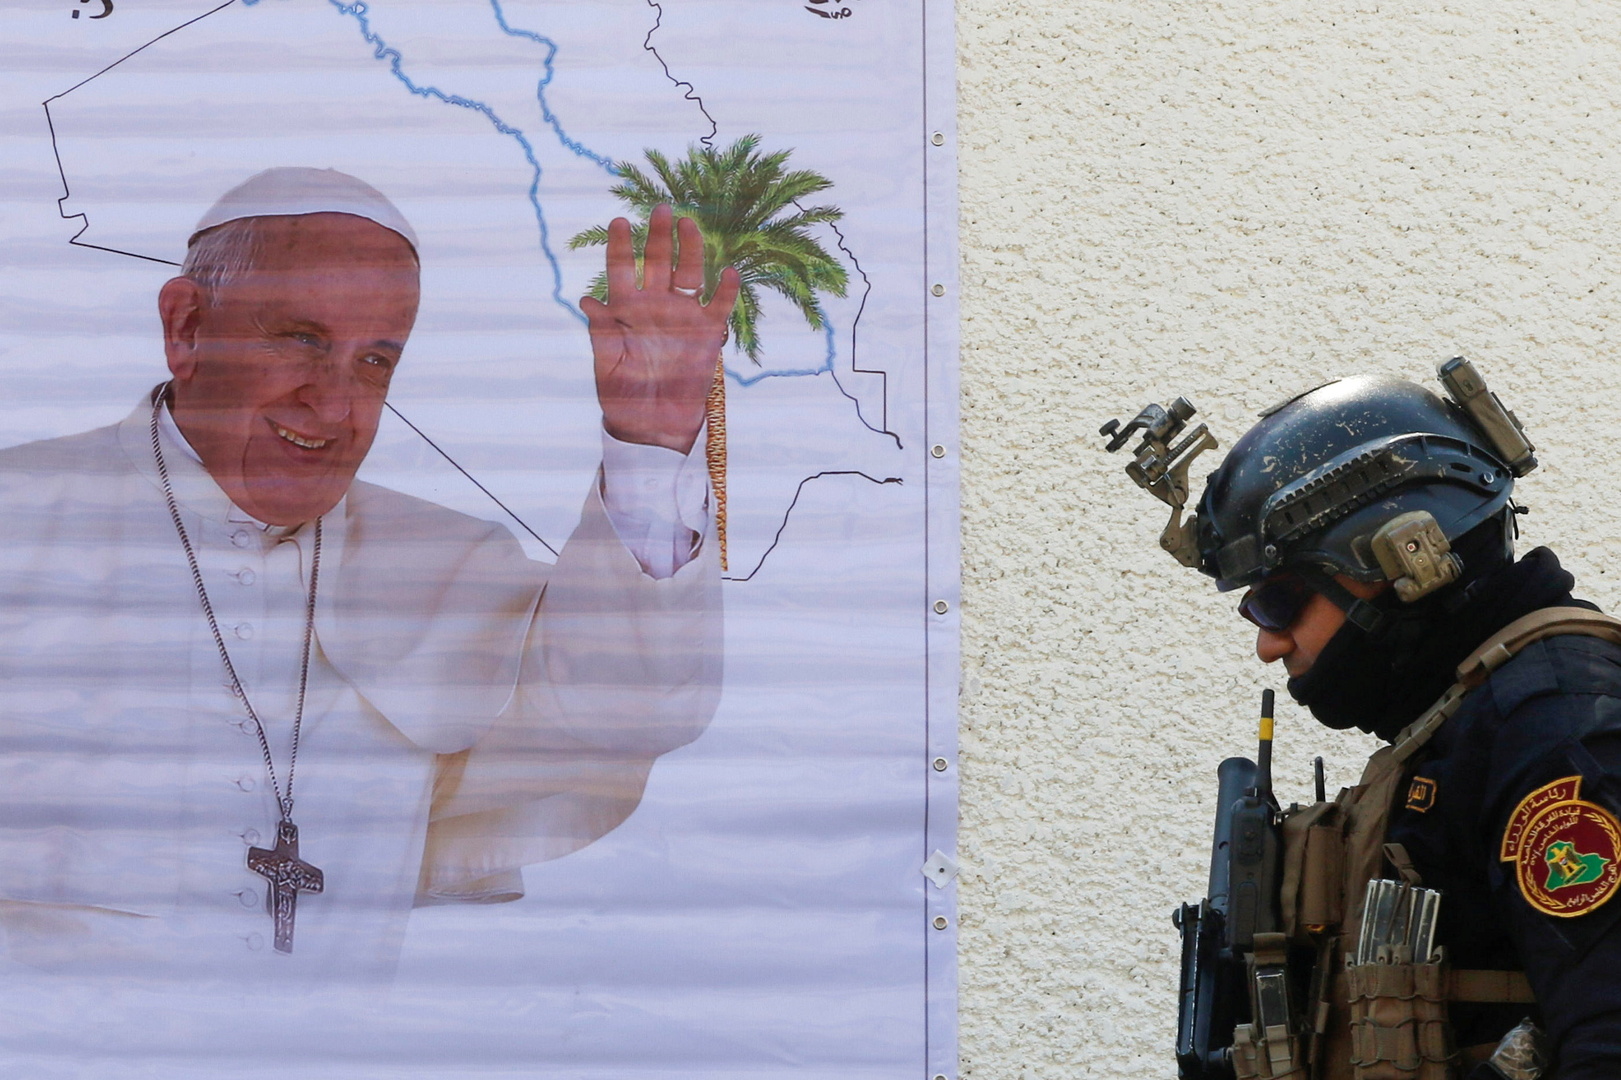 البابا فرانسيس يبدأ زيارة تاريخية إلى العراق